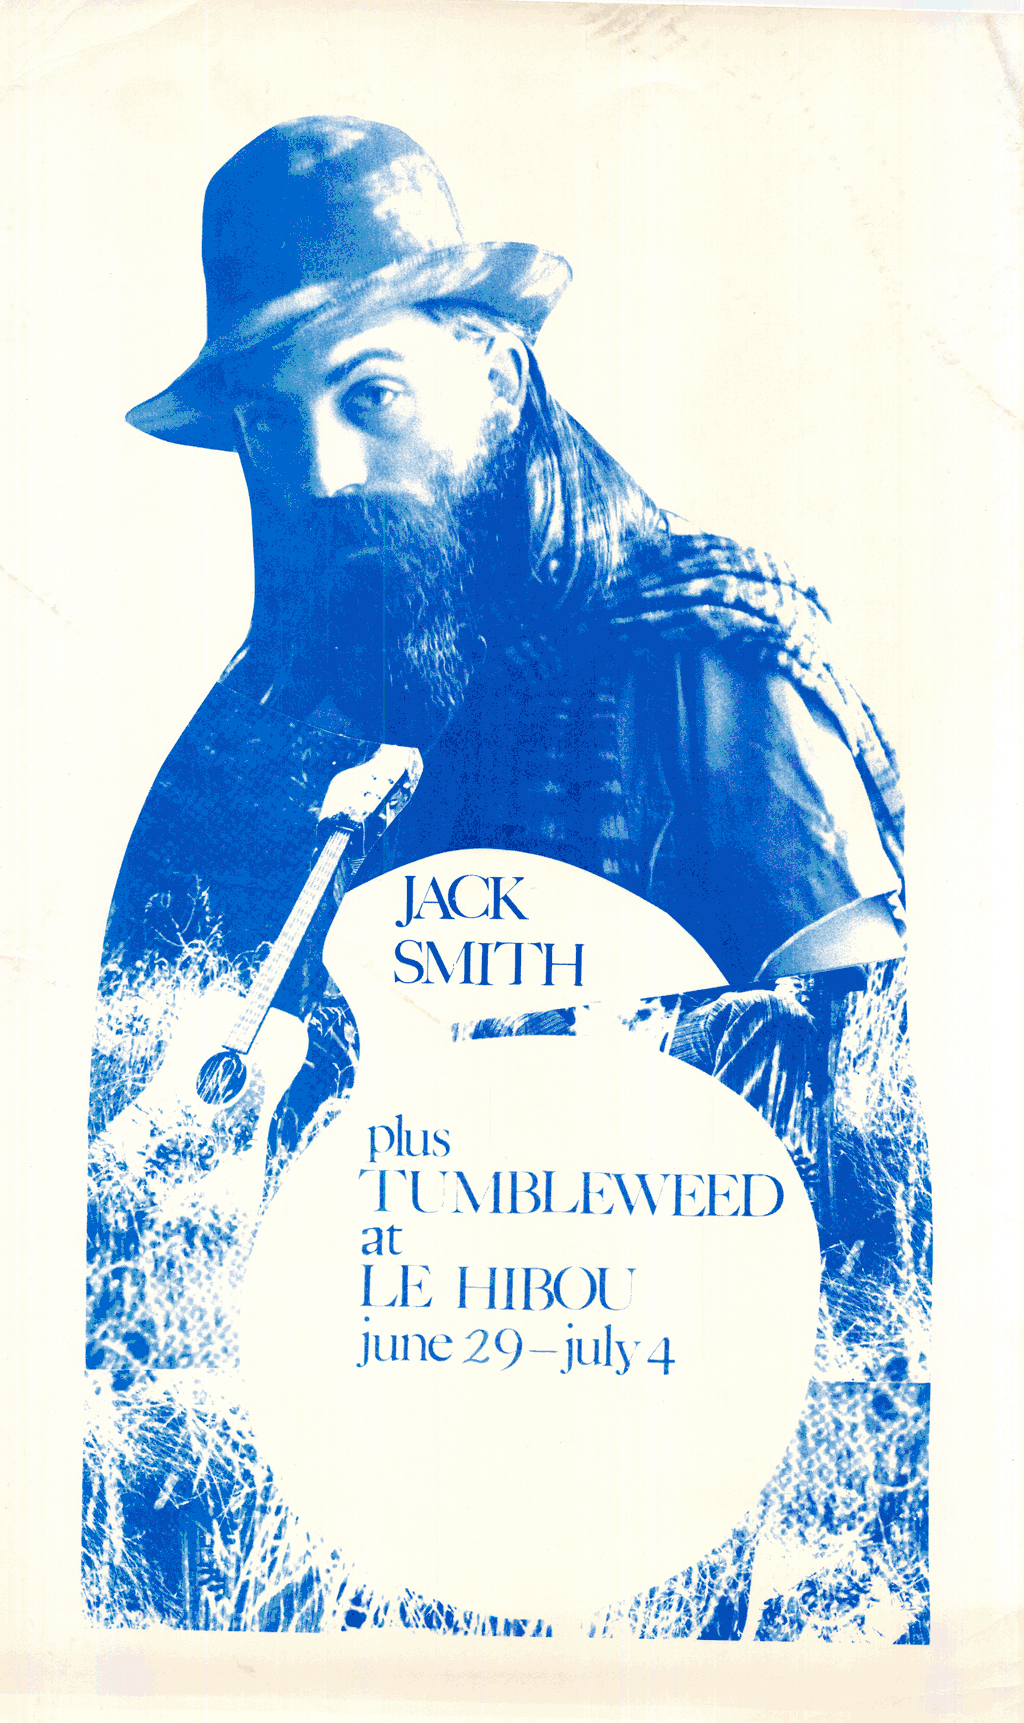 Jack Smith plus Tumbleweed